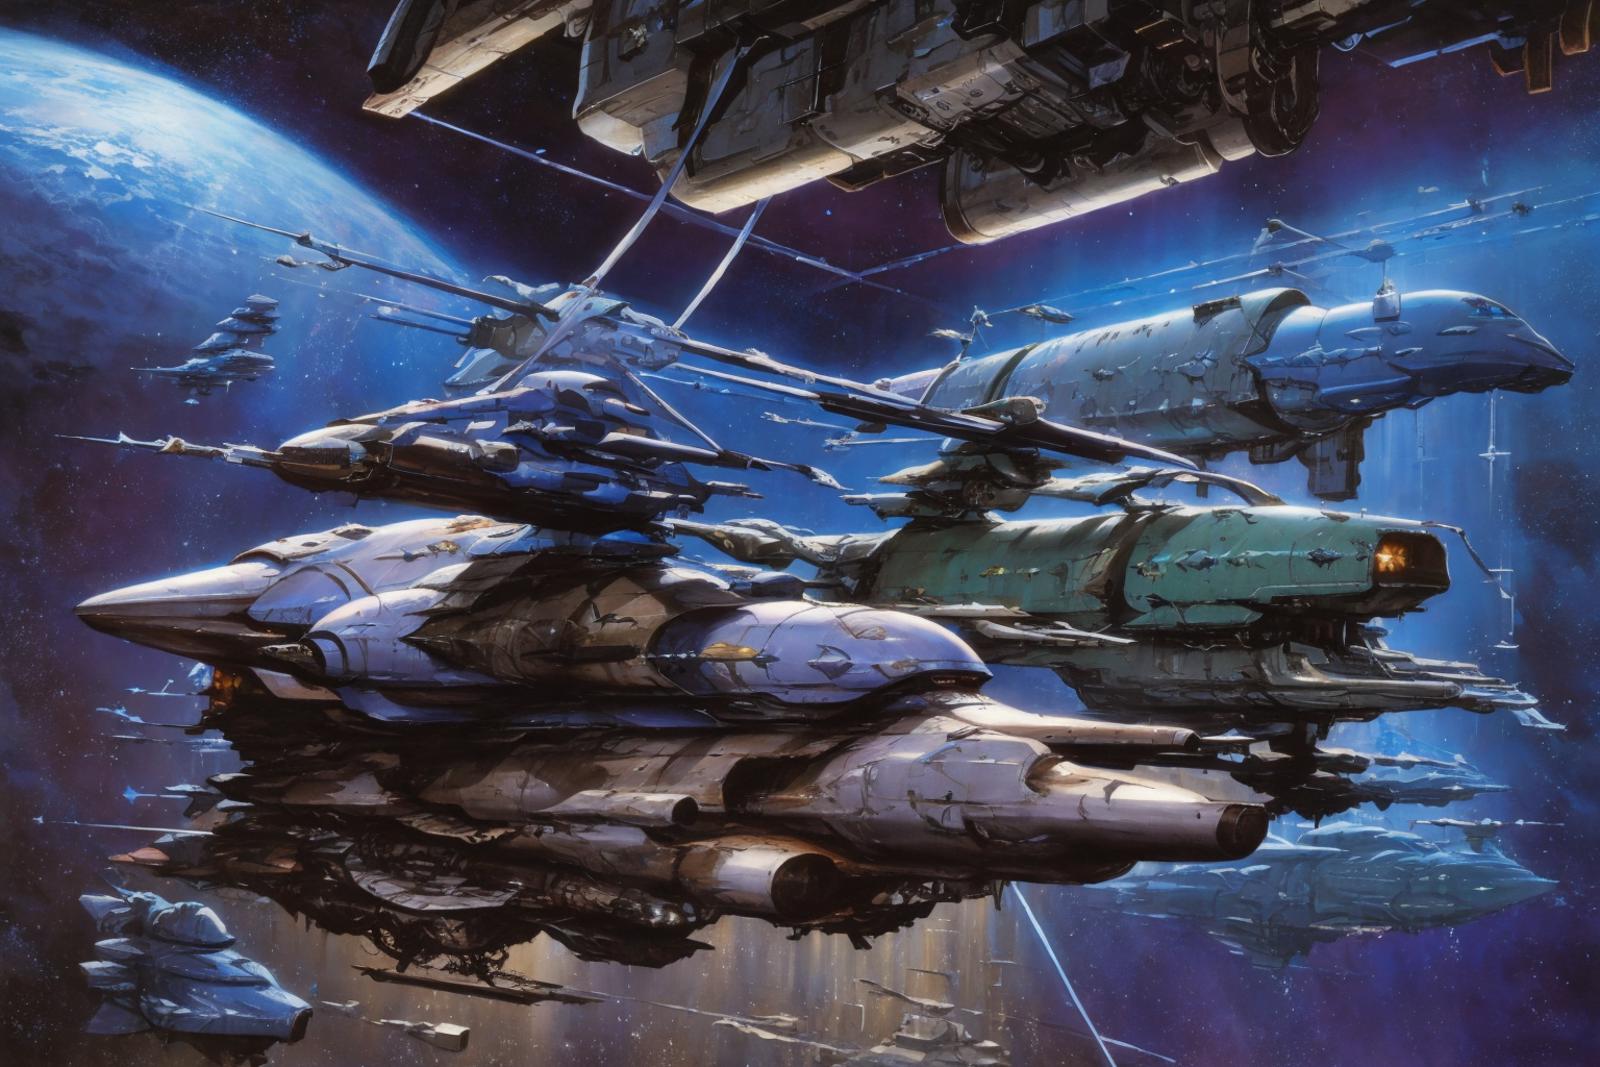 Retro Sci-Fi image by JxC